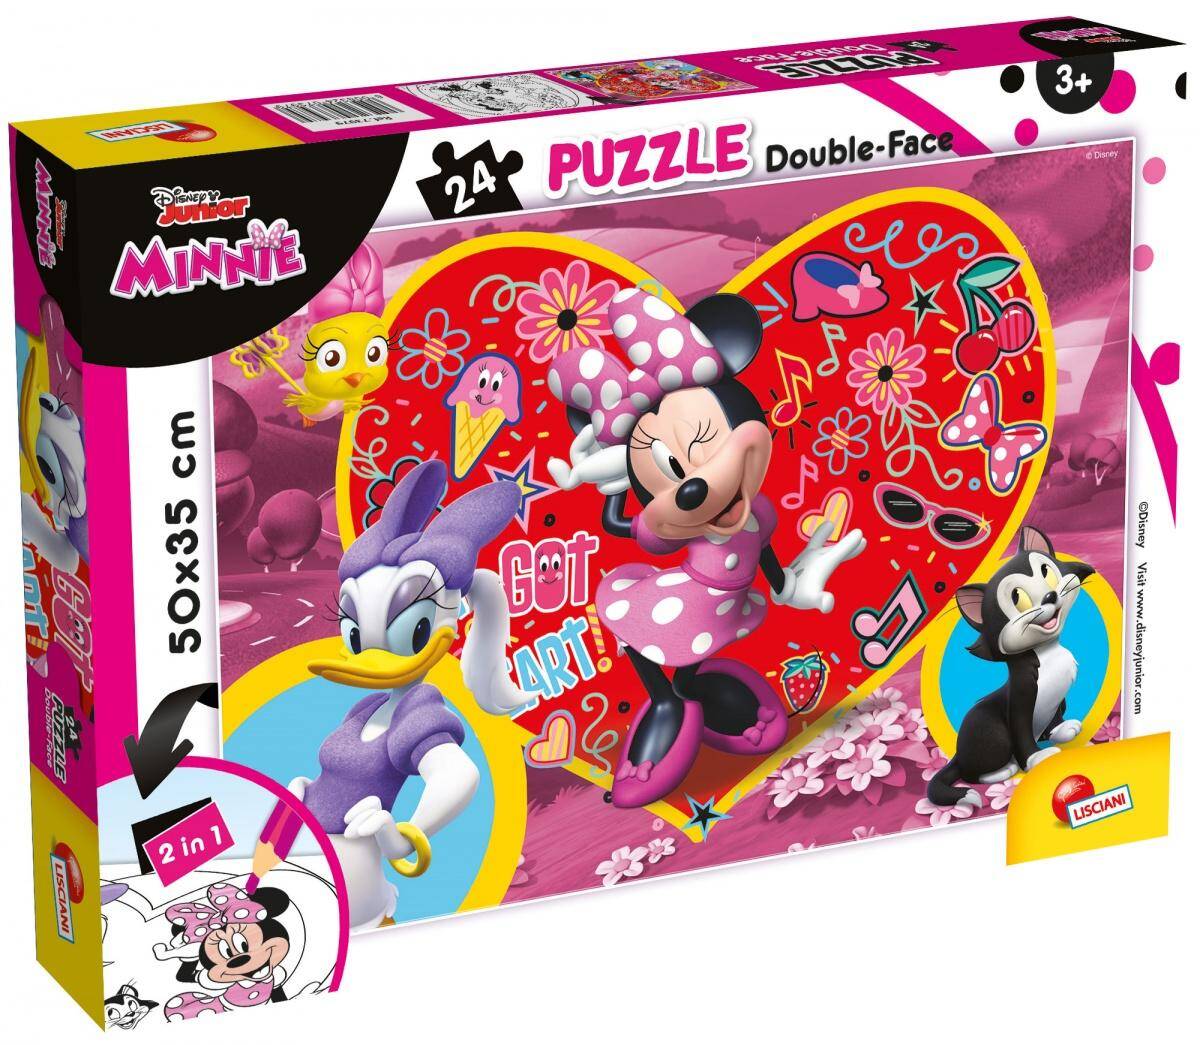 Puzzle 24 plus double-face Minnie 304-73979